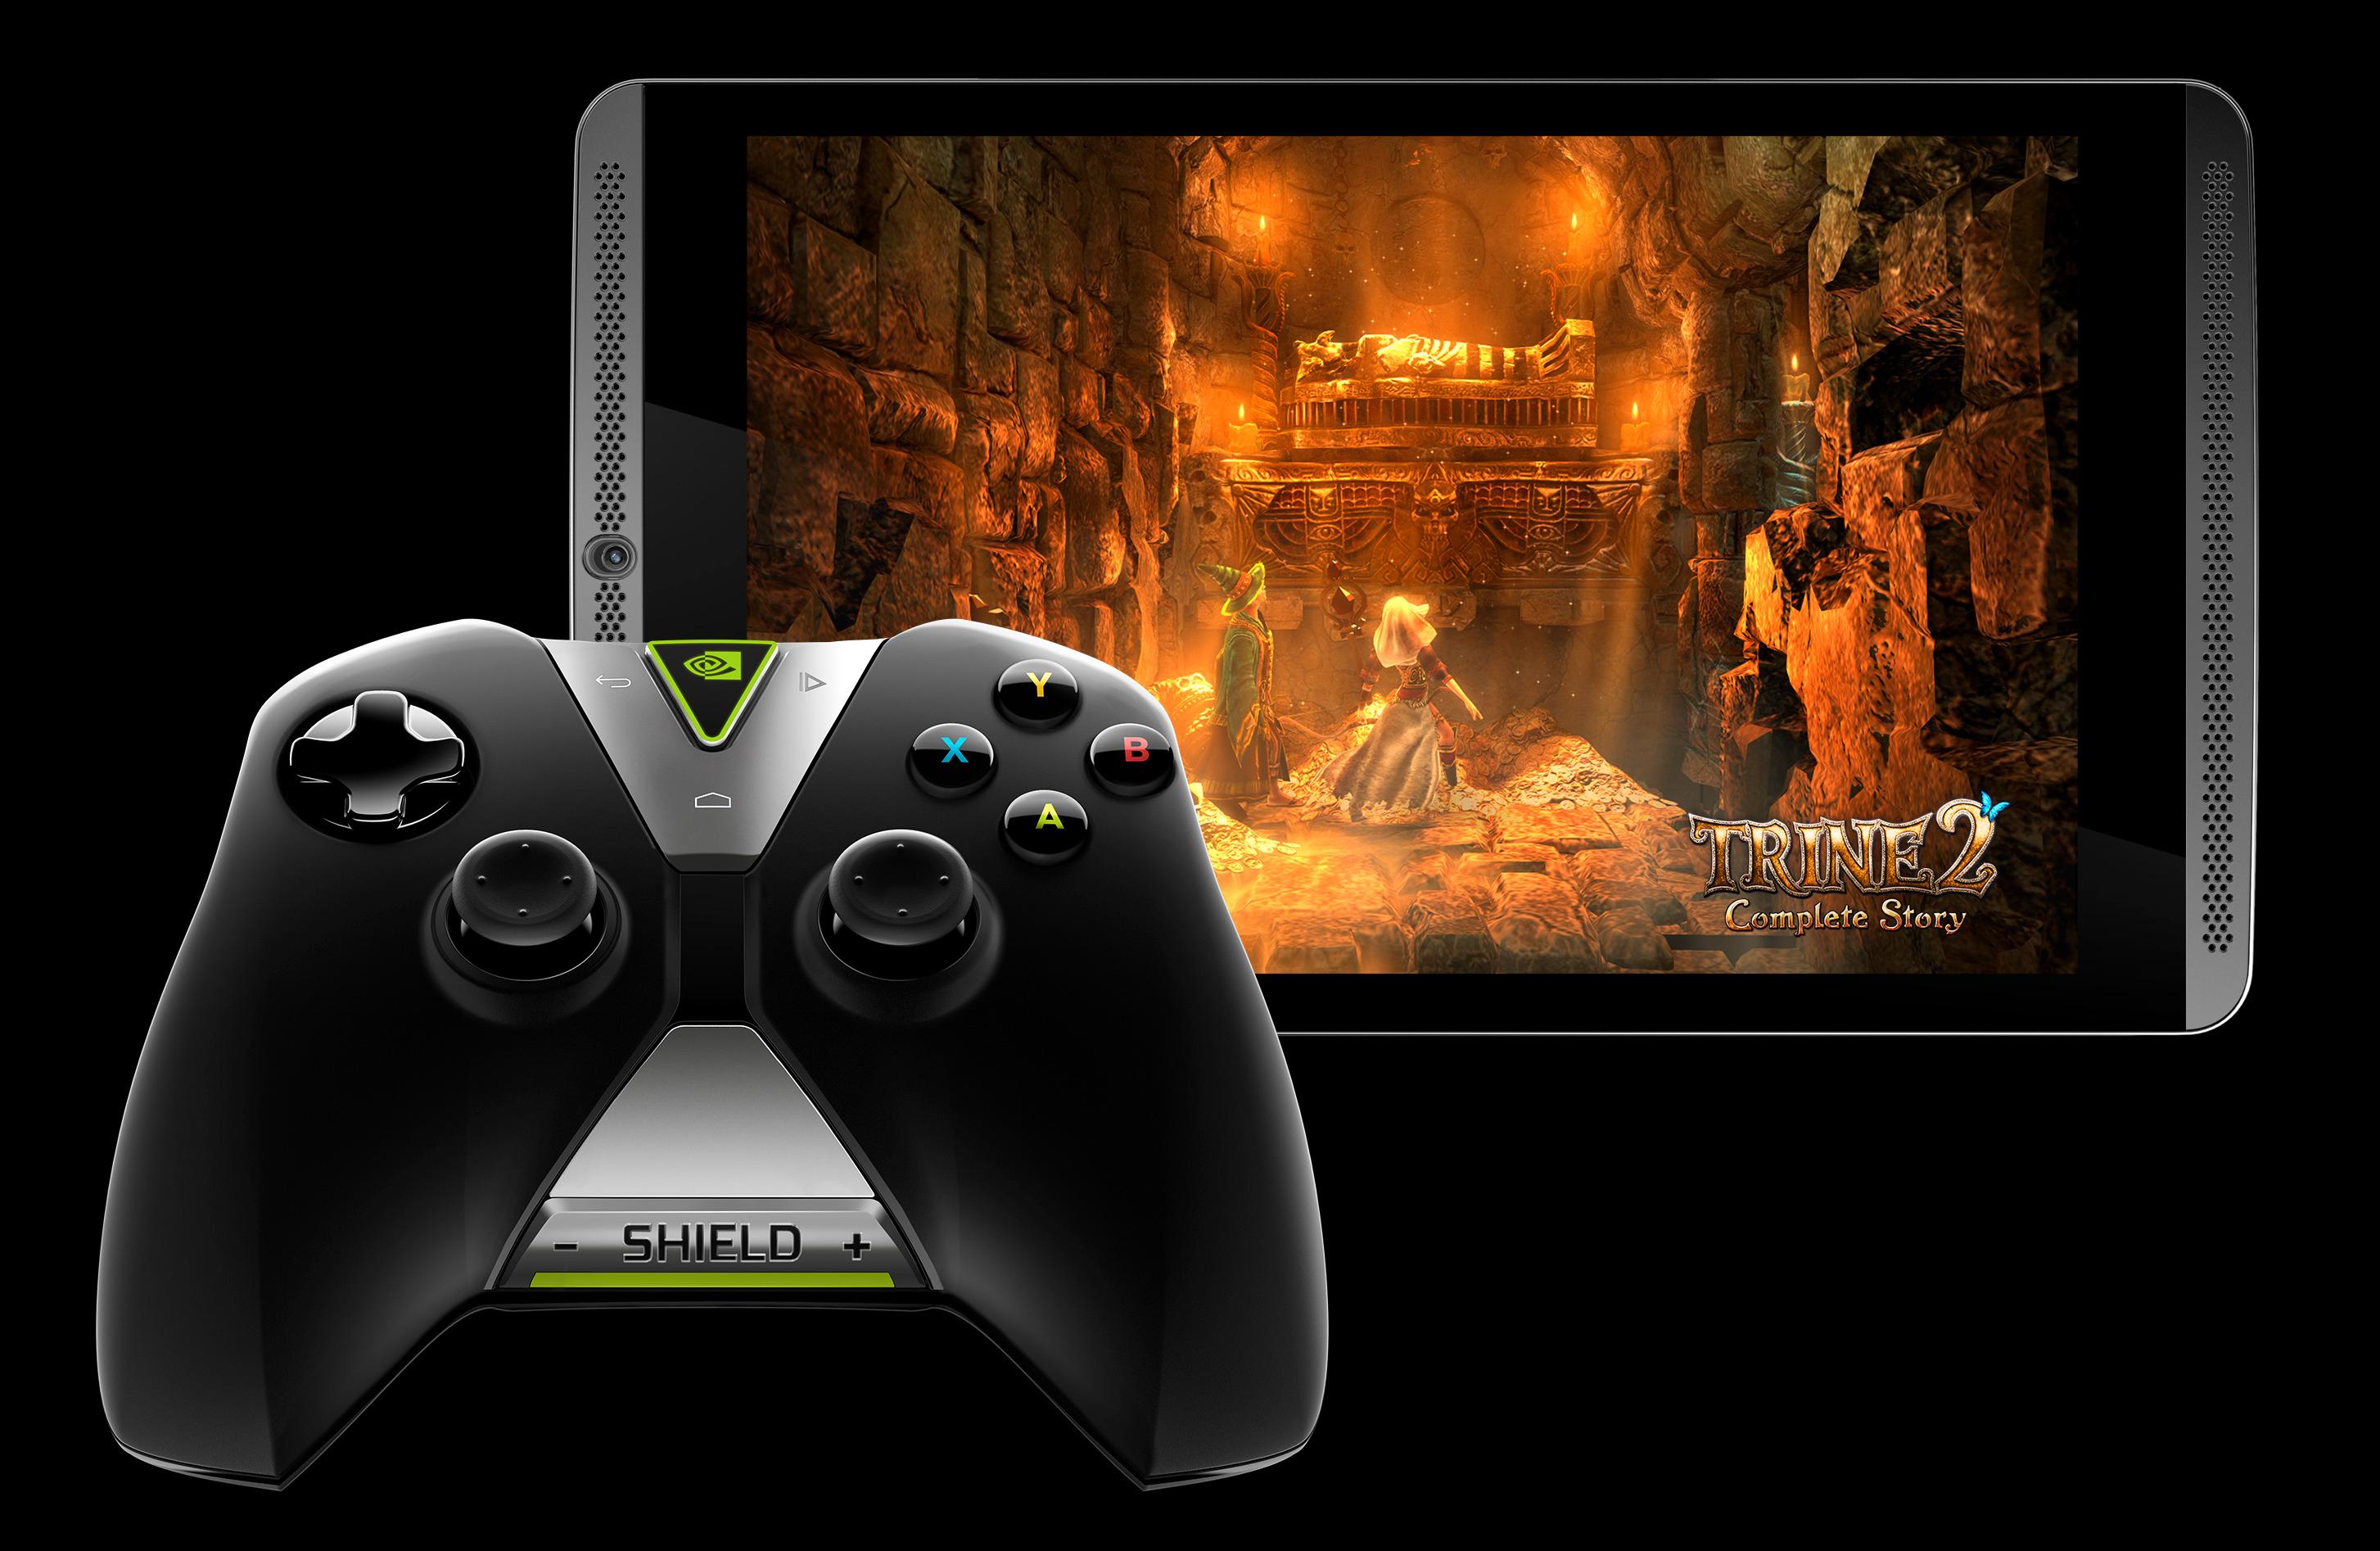 Fullversjonen av spillet Trine 2 følger med på kjøpet med Nvidia Shield Tablet – men håndkontrolleren må kjøpes ved siden av.Foto: Nvidia